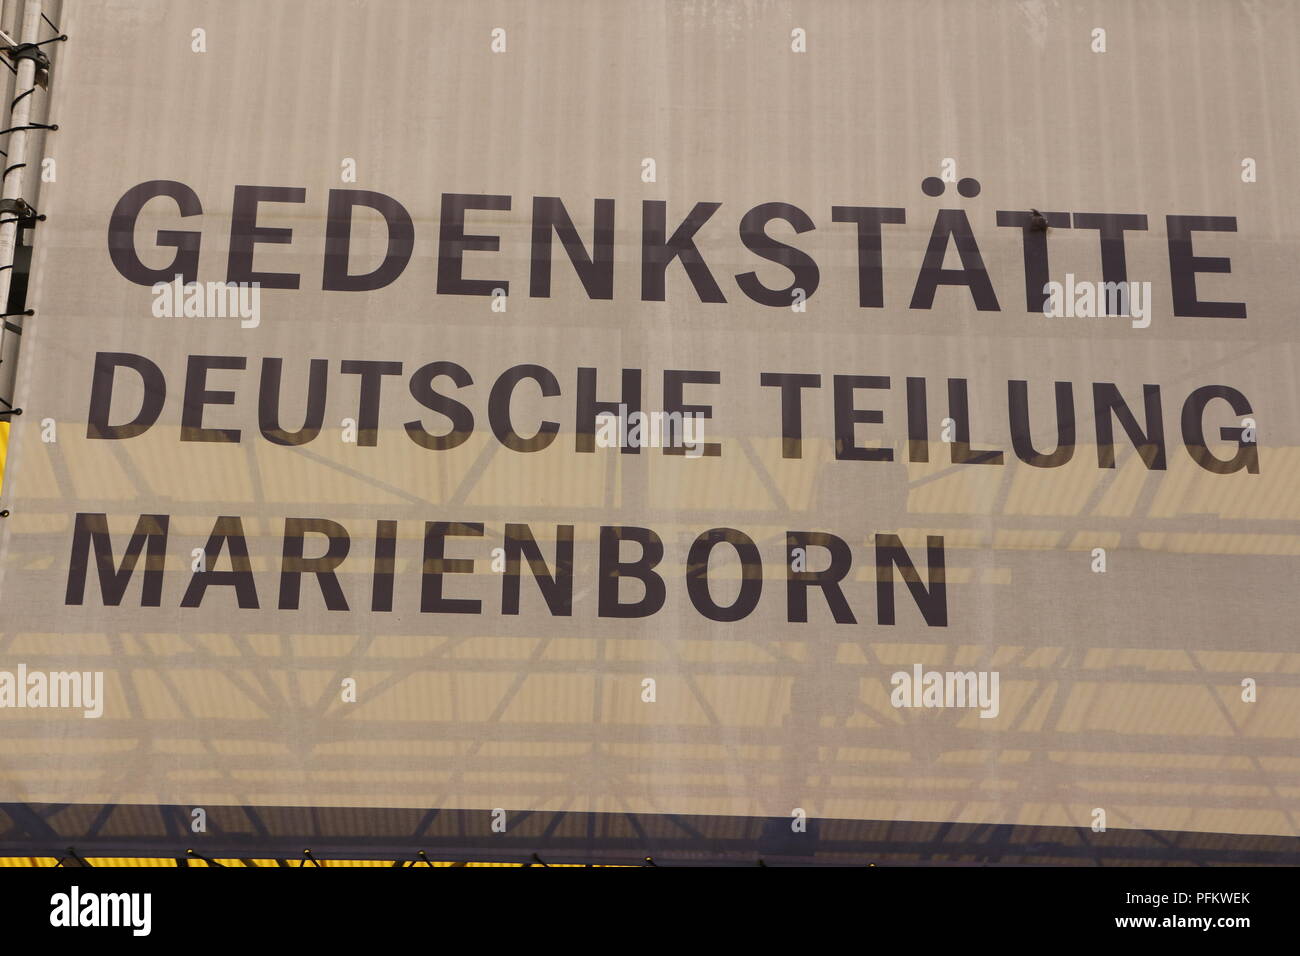 Die ehemalige Grenzstation Marienborn bei Helmstedt zwischen West-und Ostdeutschland in Sachsen Anhalt. Heute Gedenkstätte der deutschen Teilung. Stock Photo